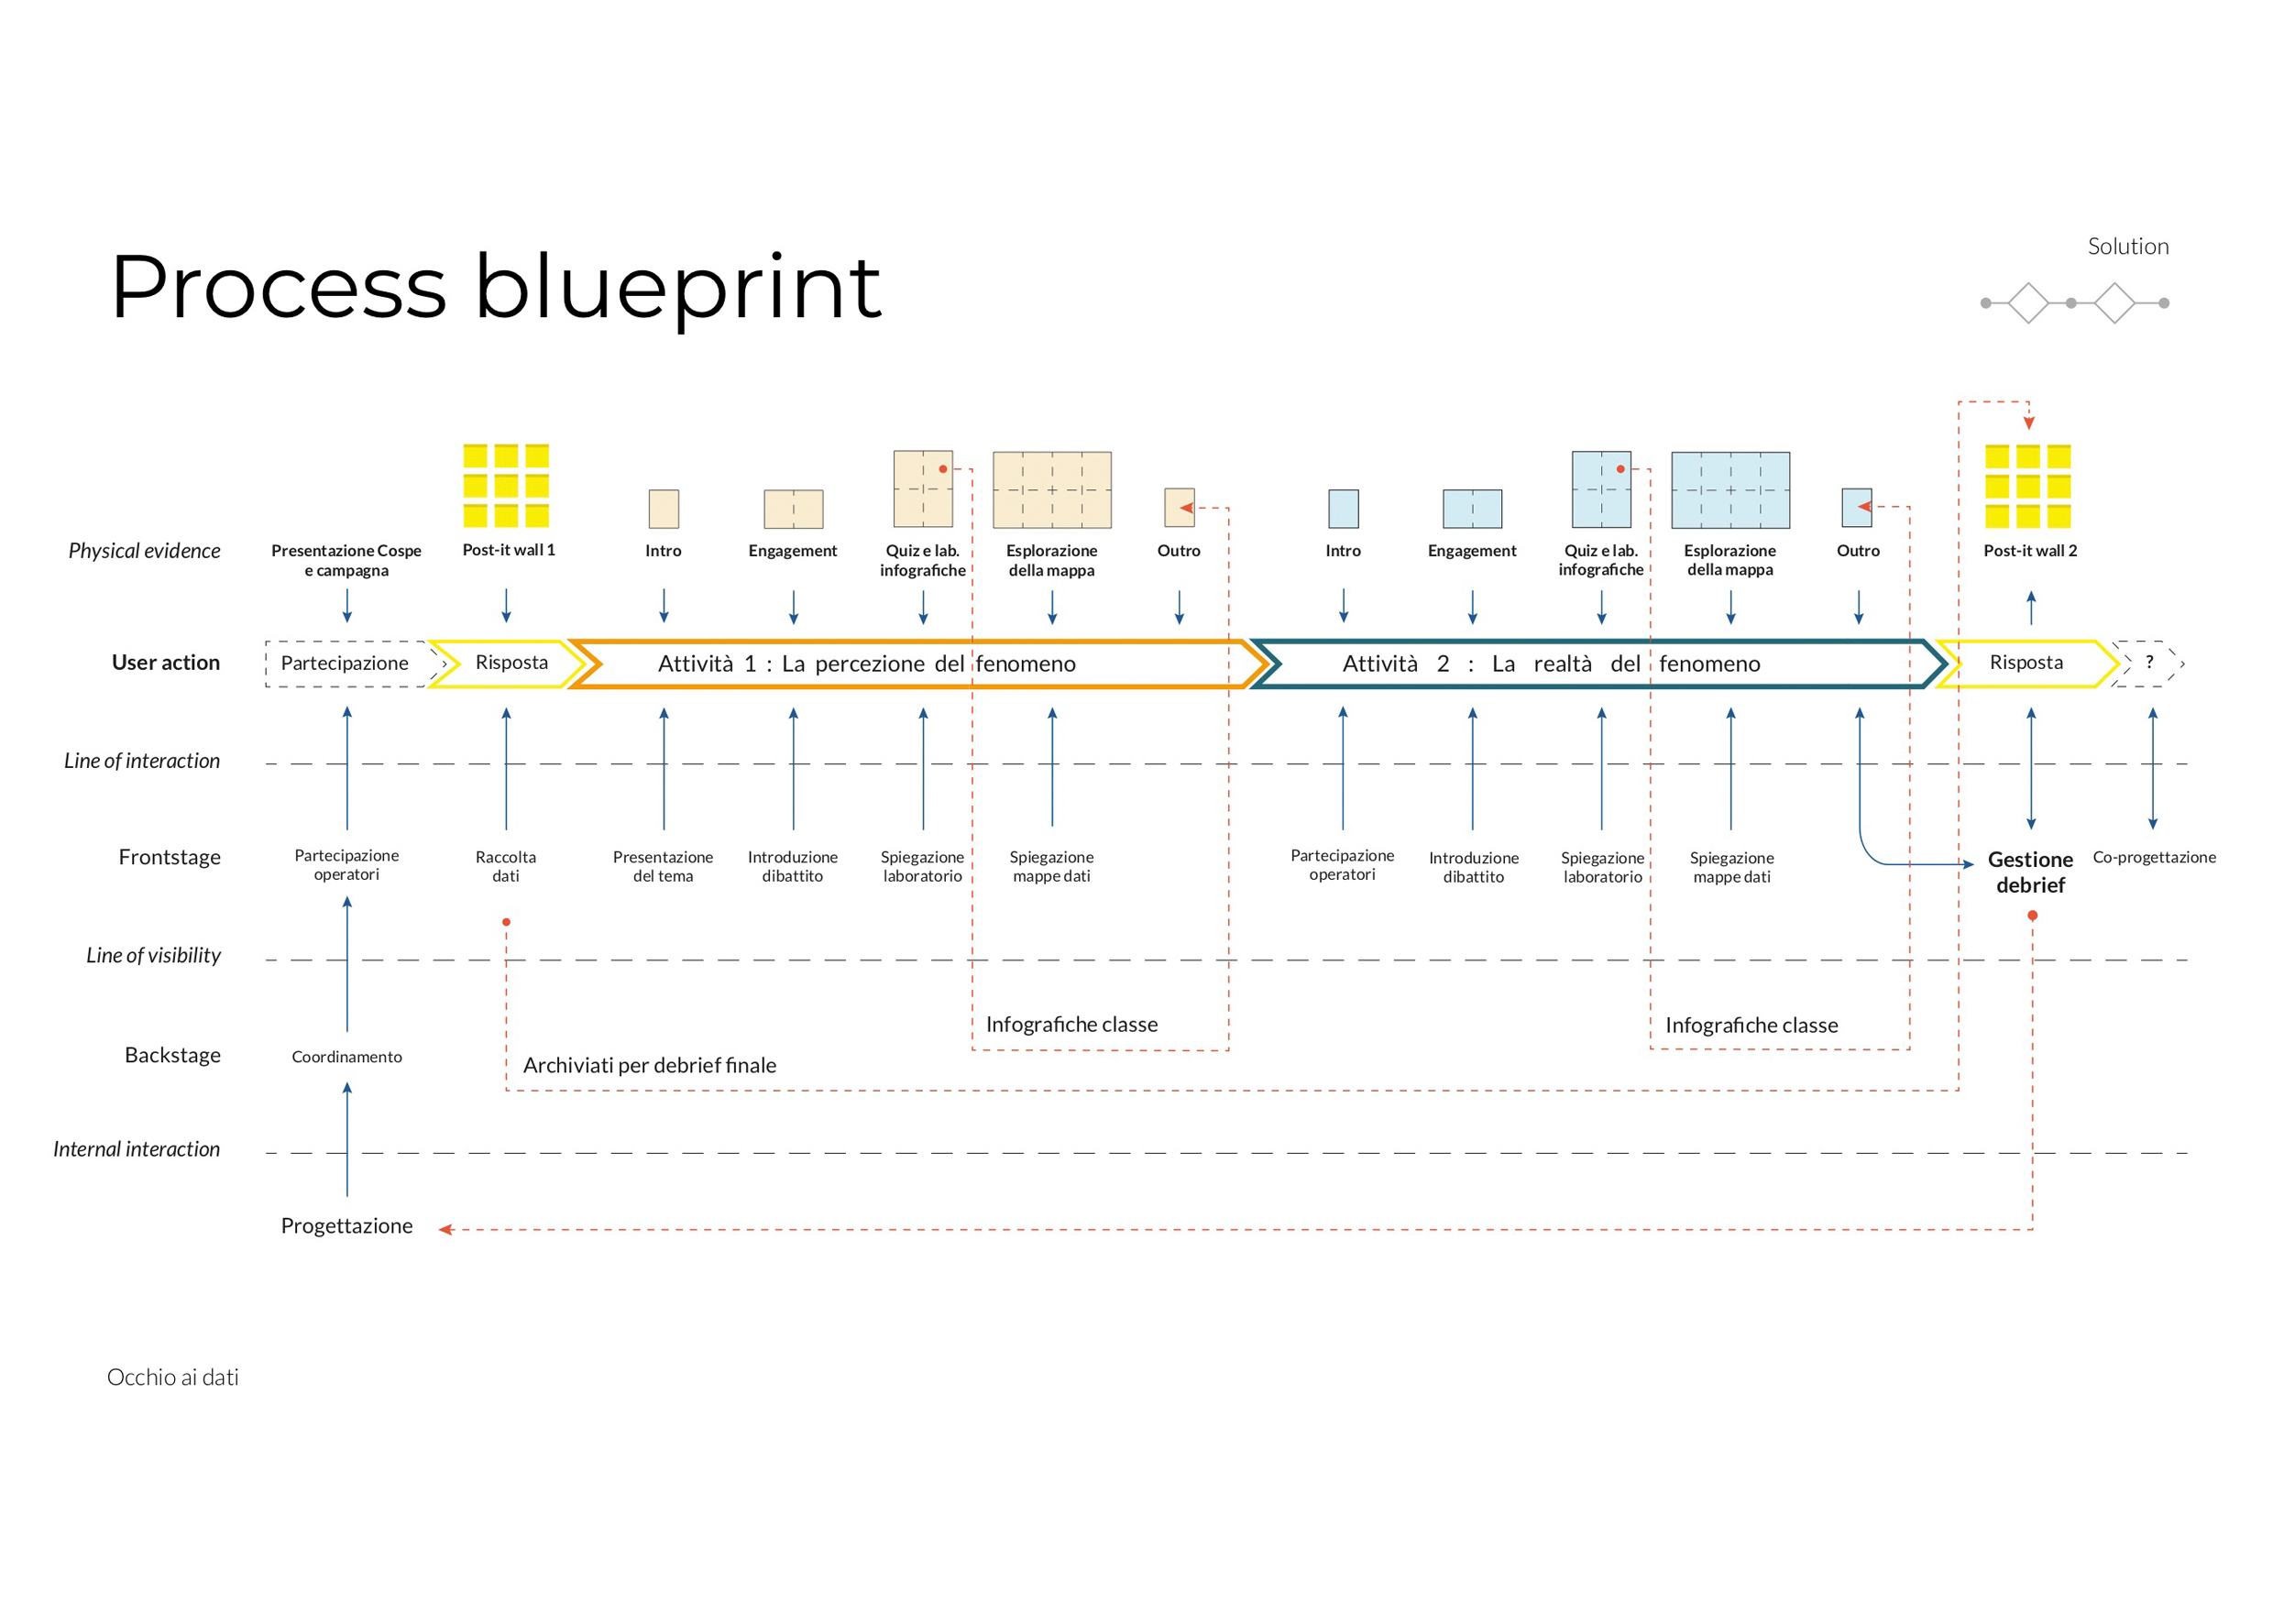 Schema del Process blueprint del progetto "la sindrome dell'Assedio"